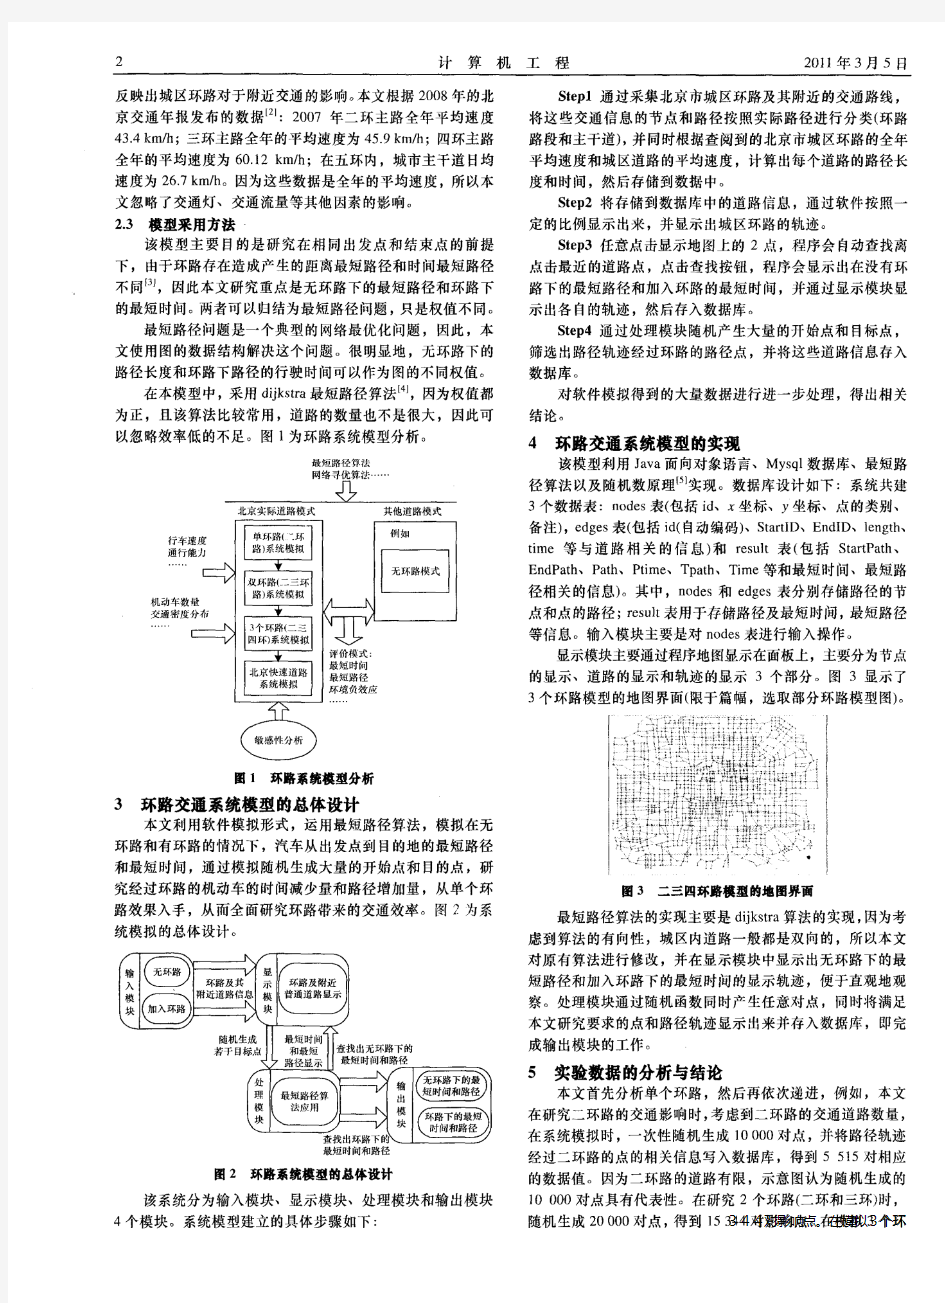 北京城区环路交通系统模型研究